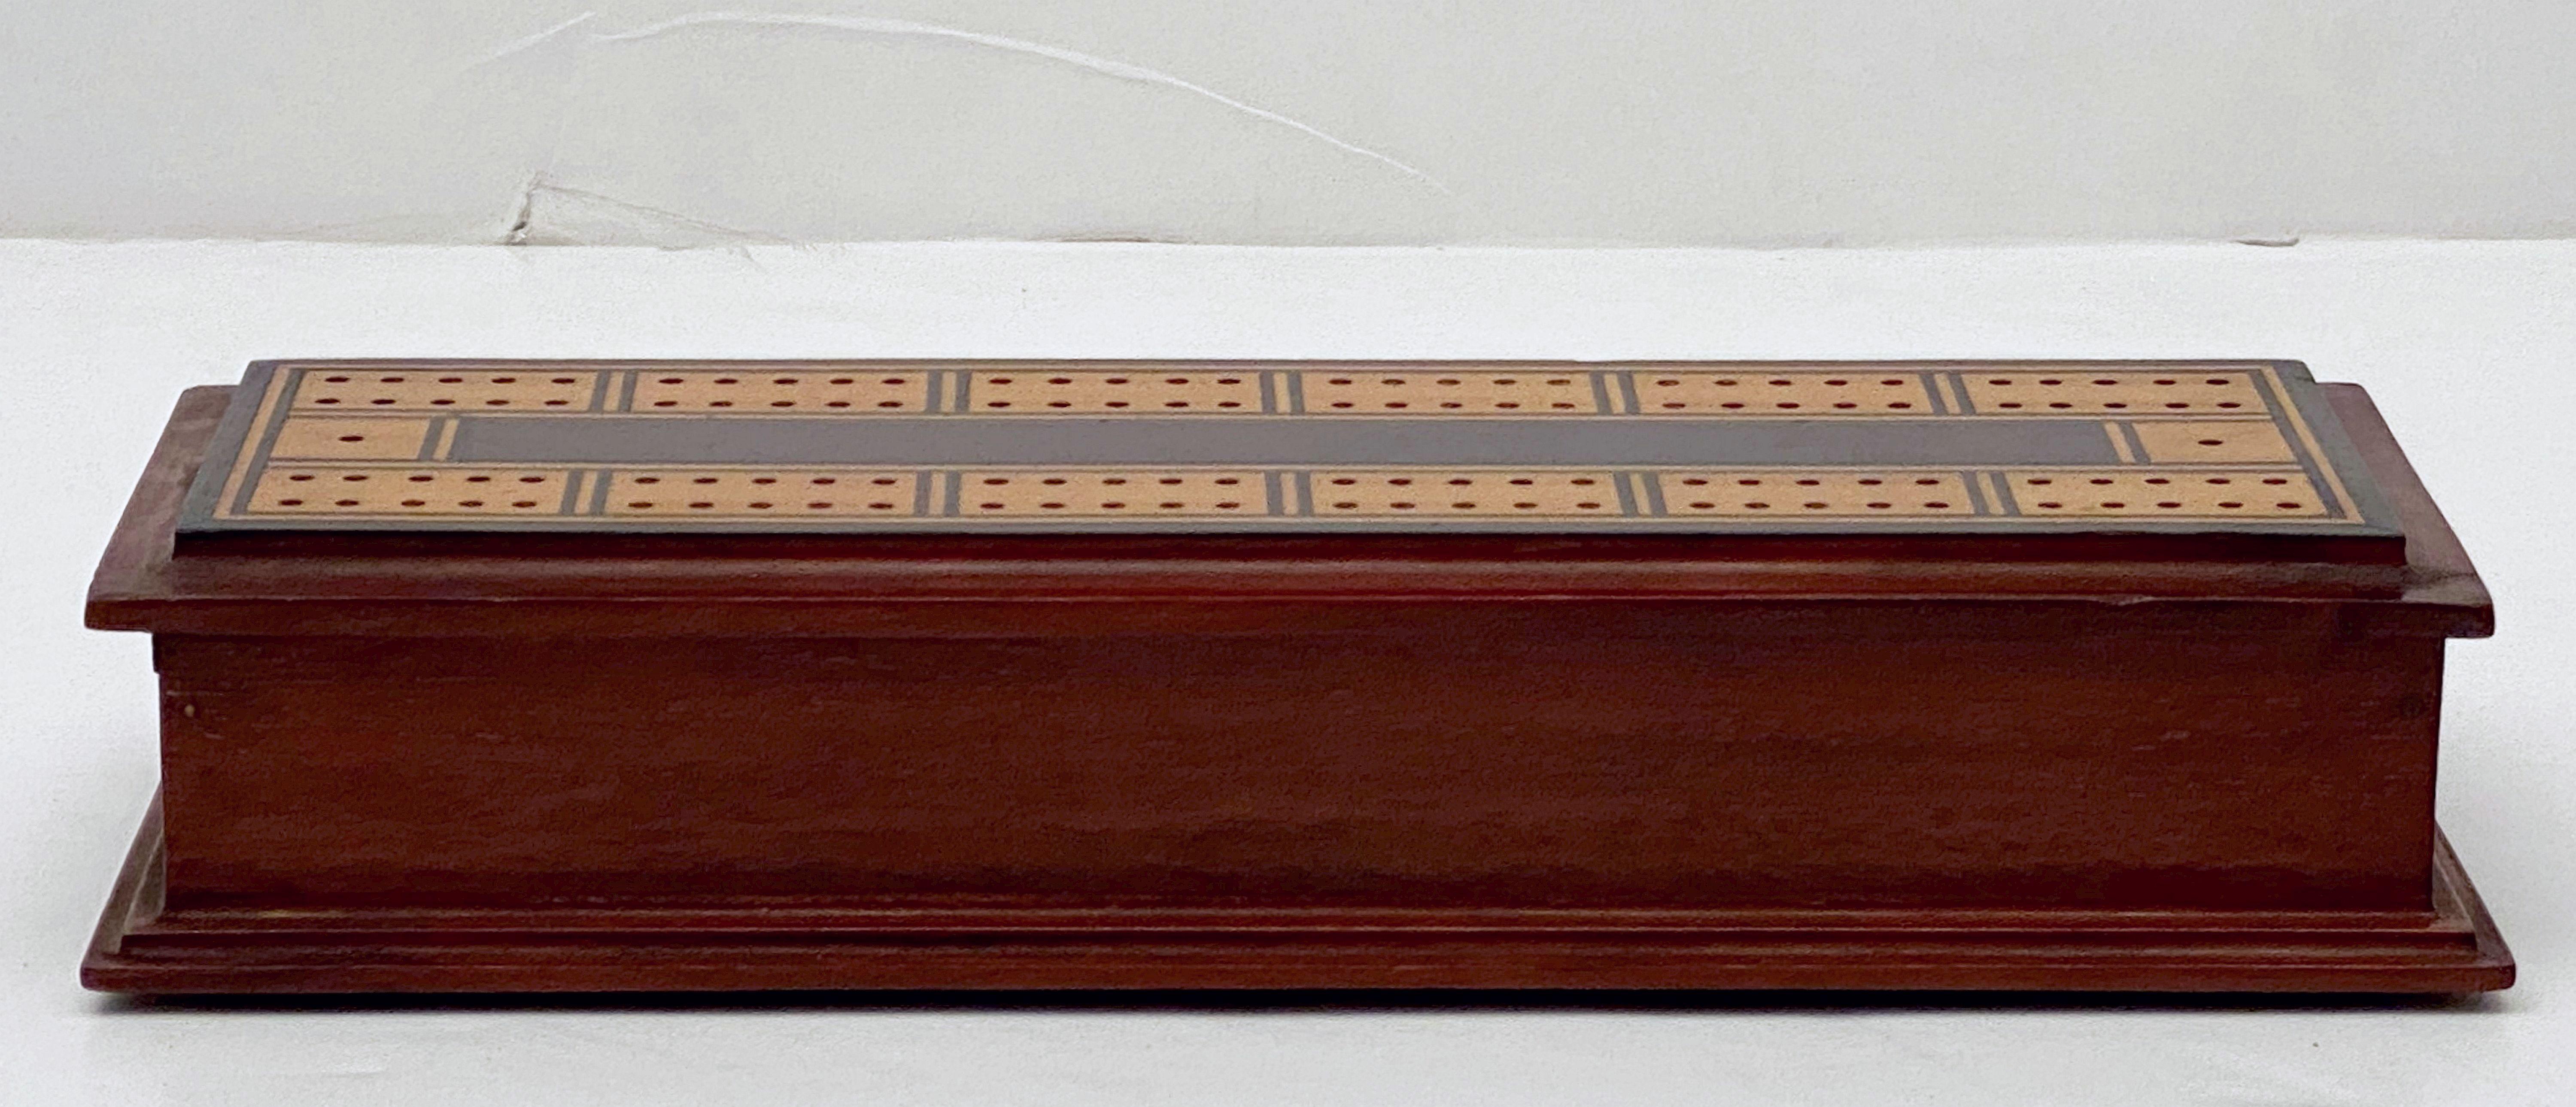 Inlay English Cribbage Board or Game Box of Inlaid Mahogany